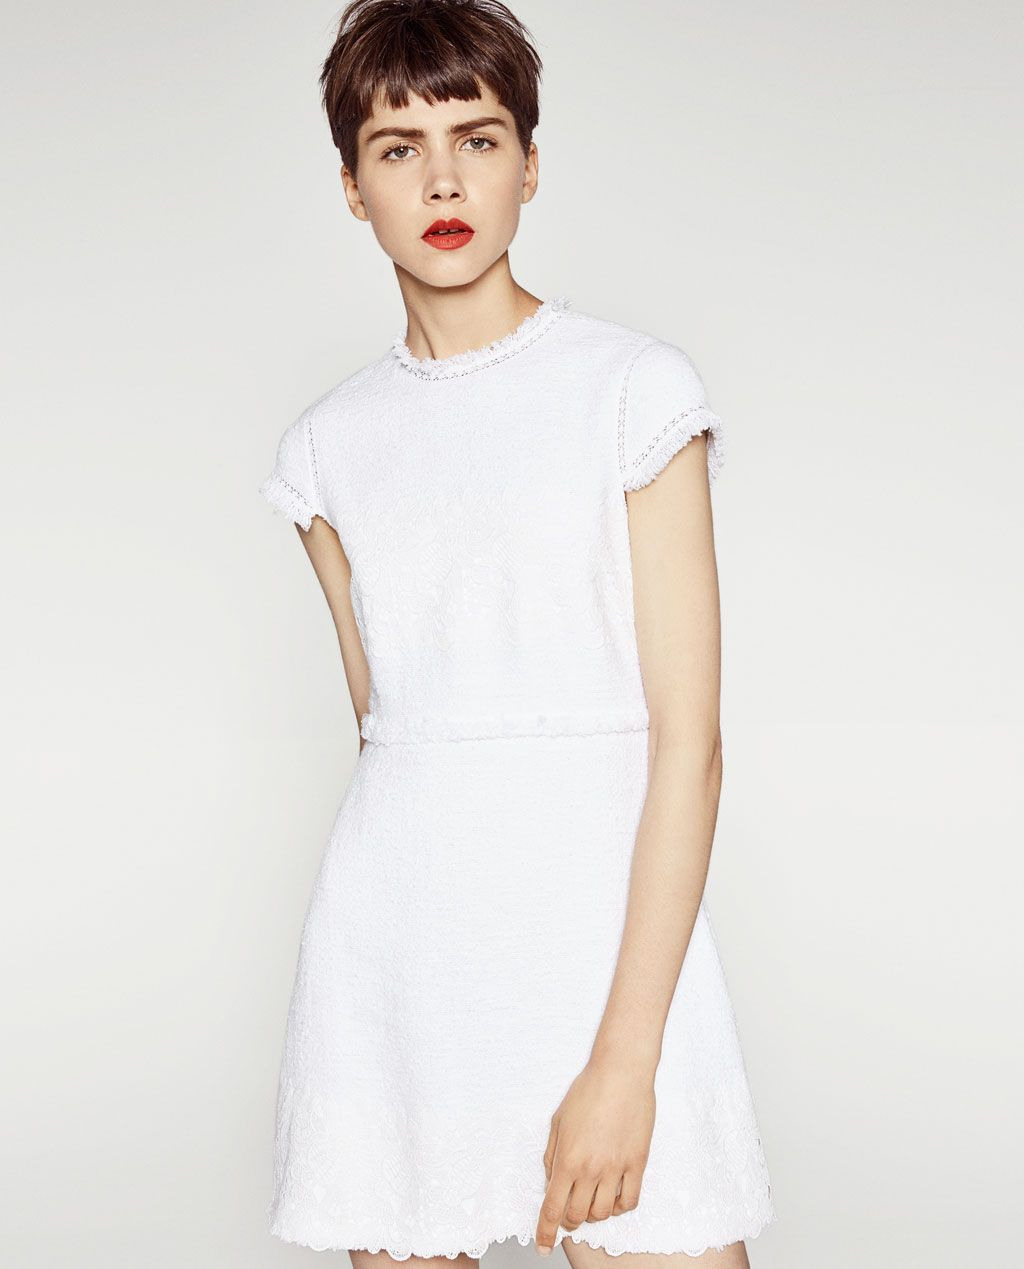 Access Denied  Weißes Kleid Lässig Kleider Kleider Für